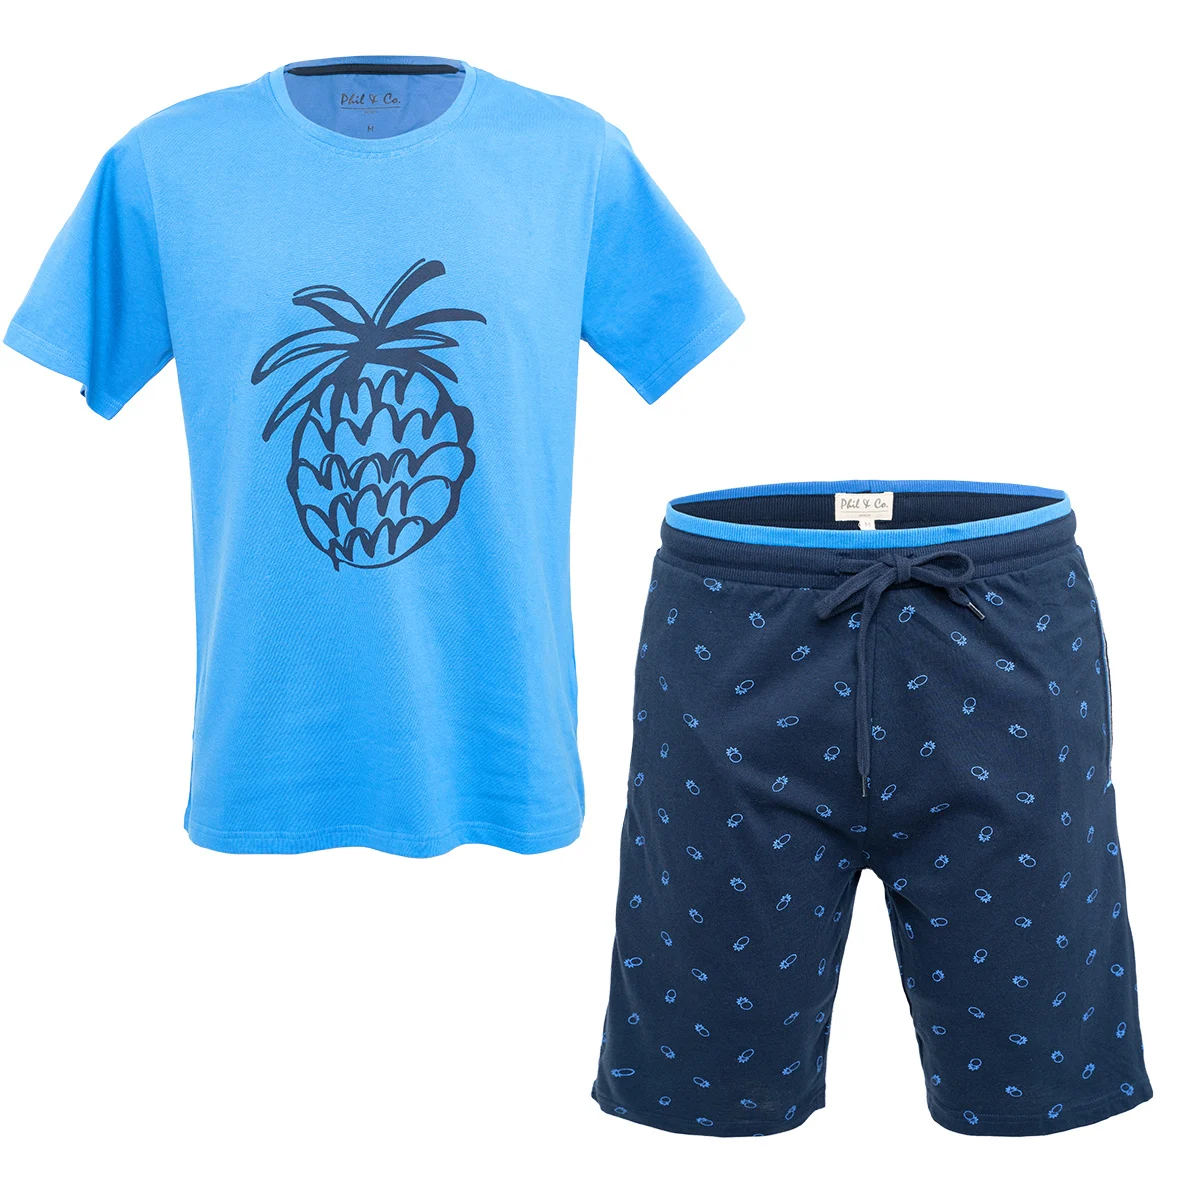 Afbeelding van Phil & Co Shortama heren korte pyjama katoen blauw ananas print